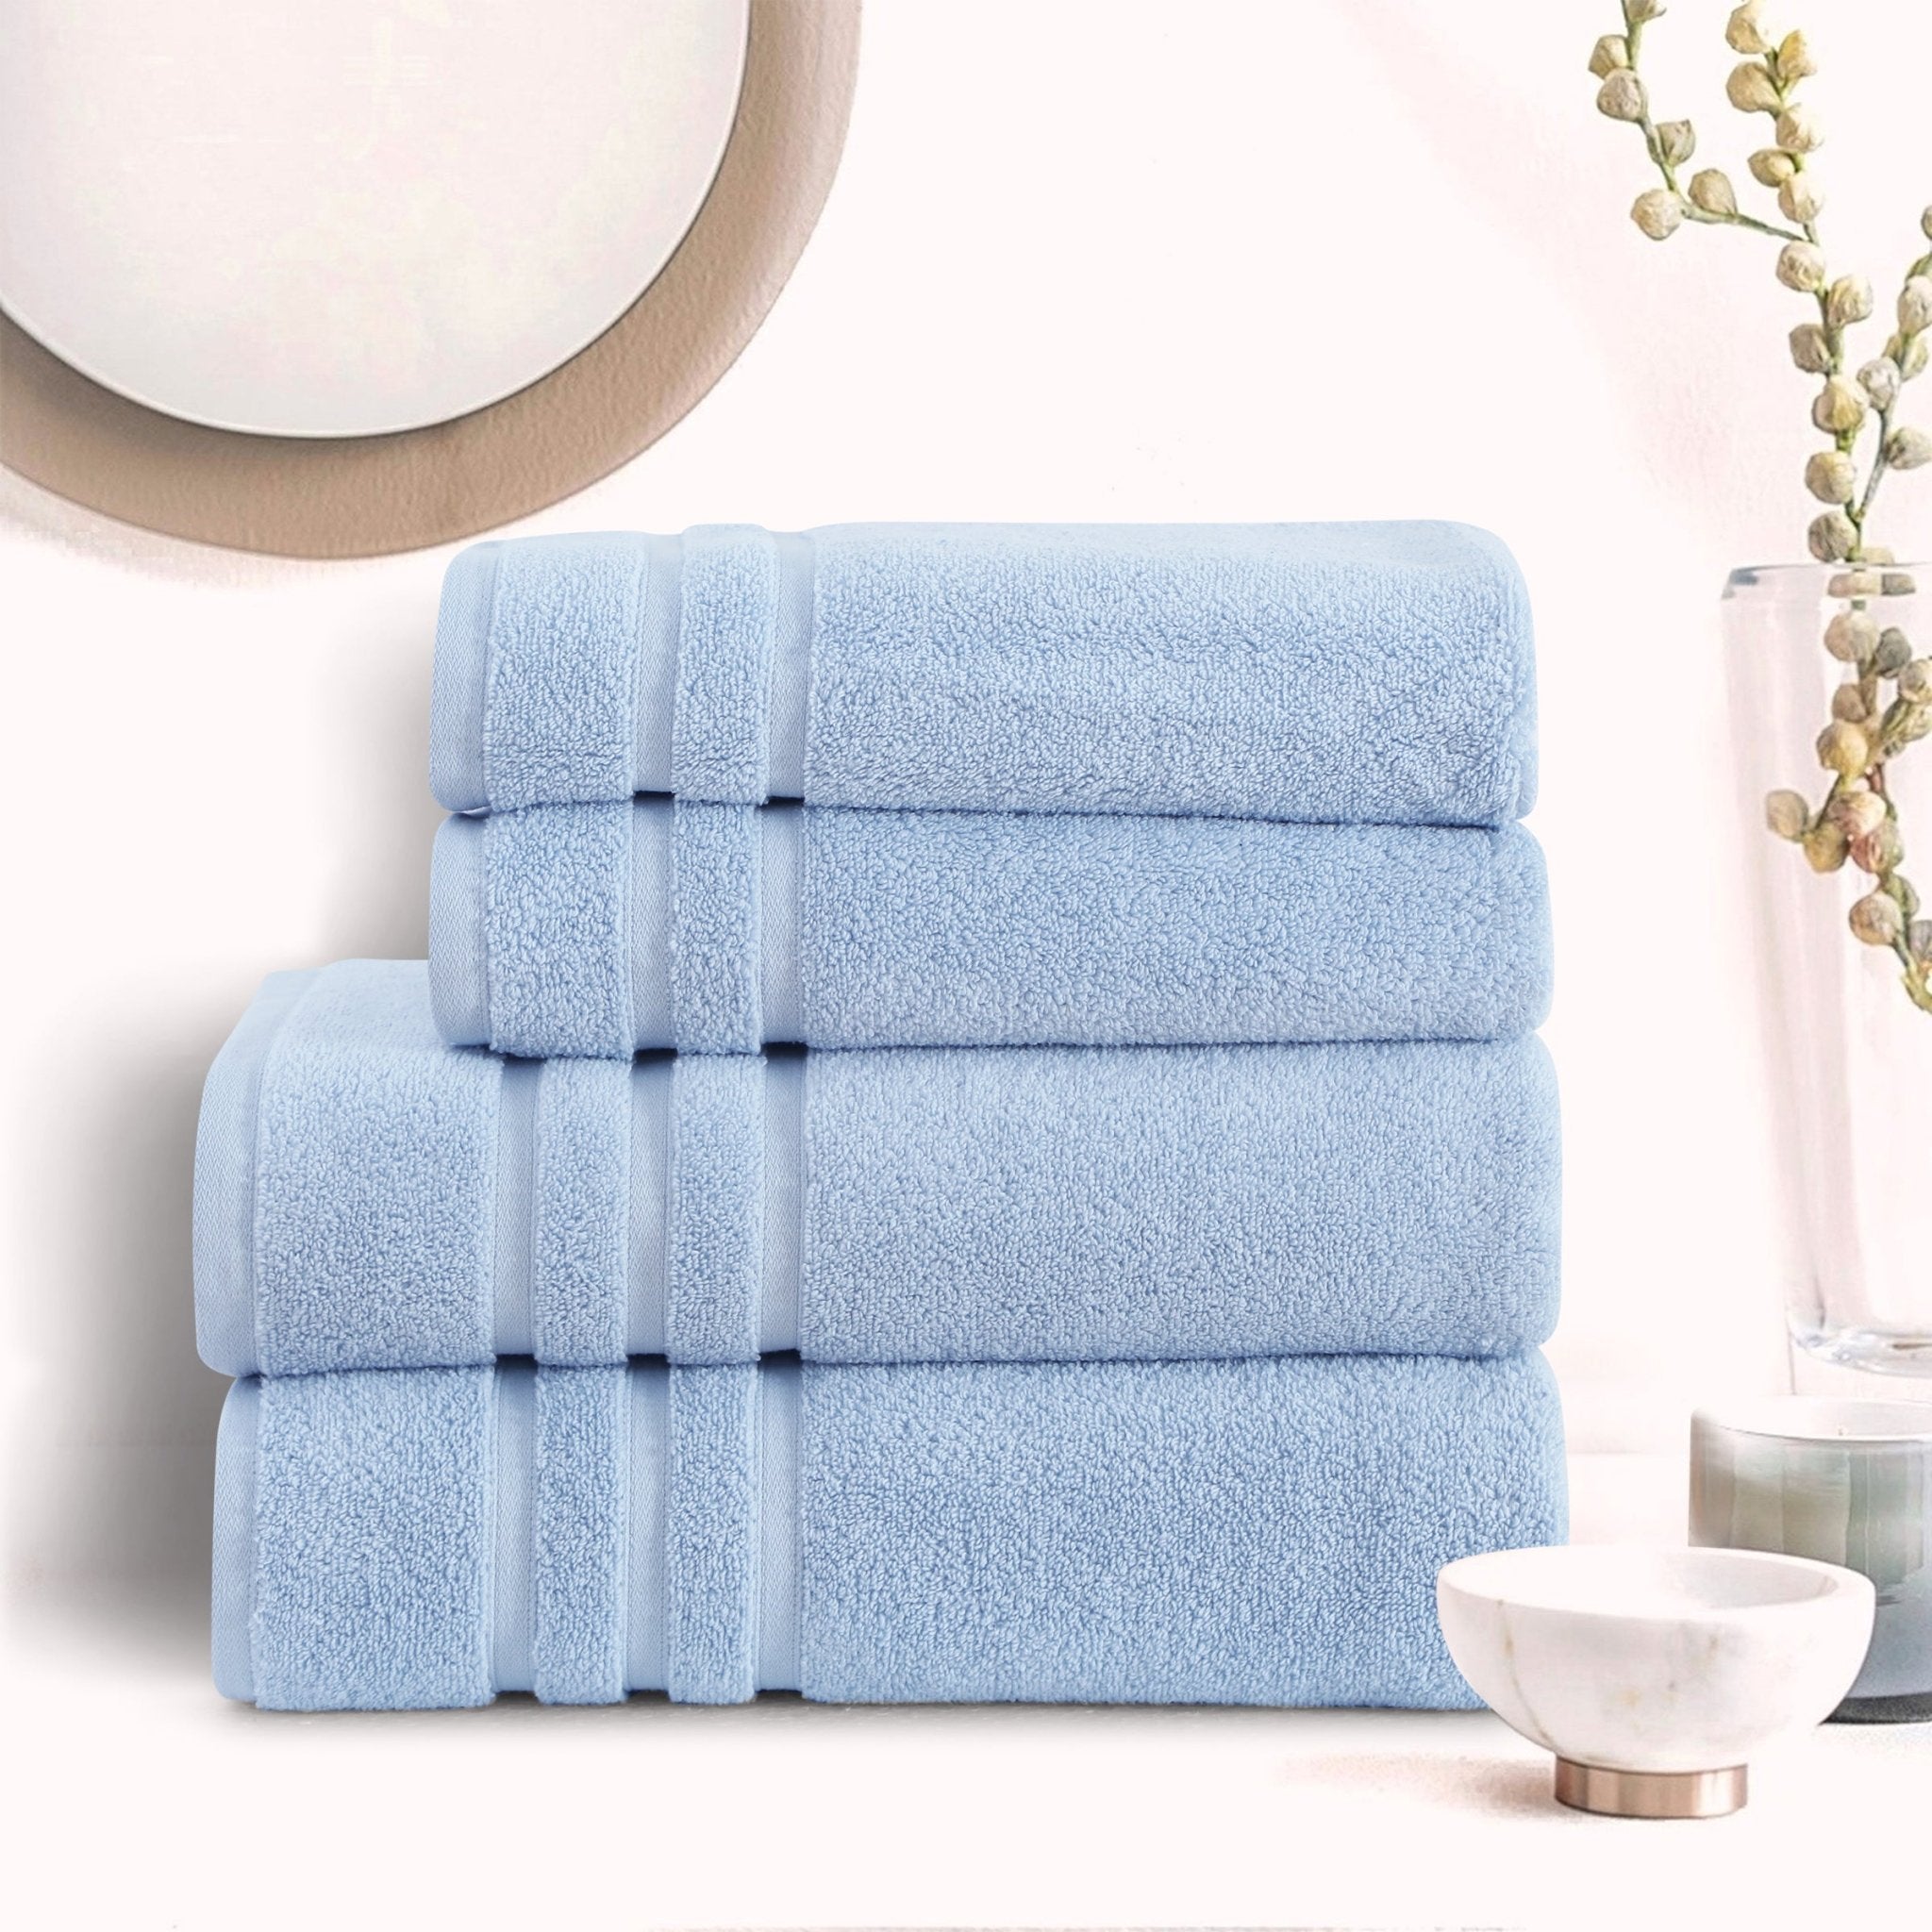 Malako Sky Blue 100% Cotton Zero Twist Towel (600GSM) - MALAKO